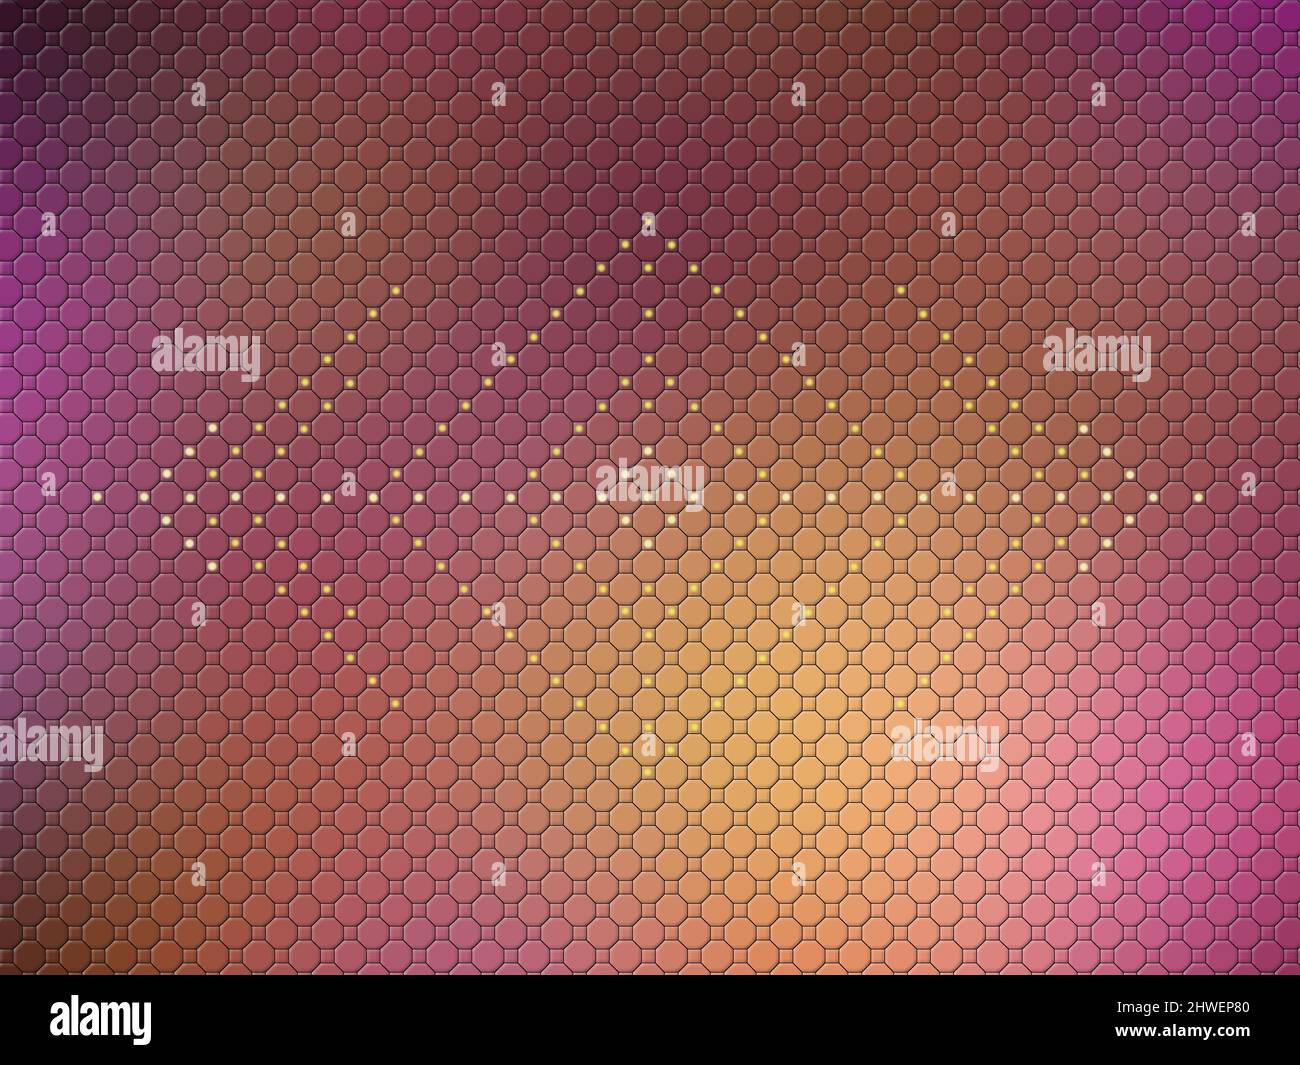 Farbiger Hintergrund in einer Netzstruktur mit hellen leuchtenden Punkten in einem speziellen Muster Stockfoto